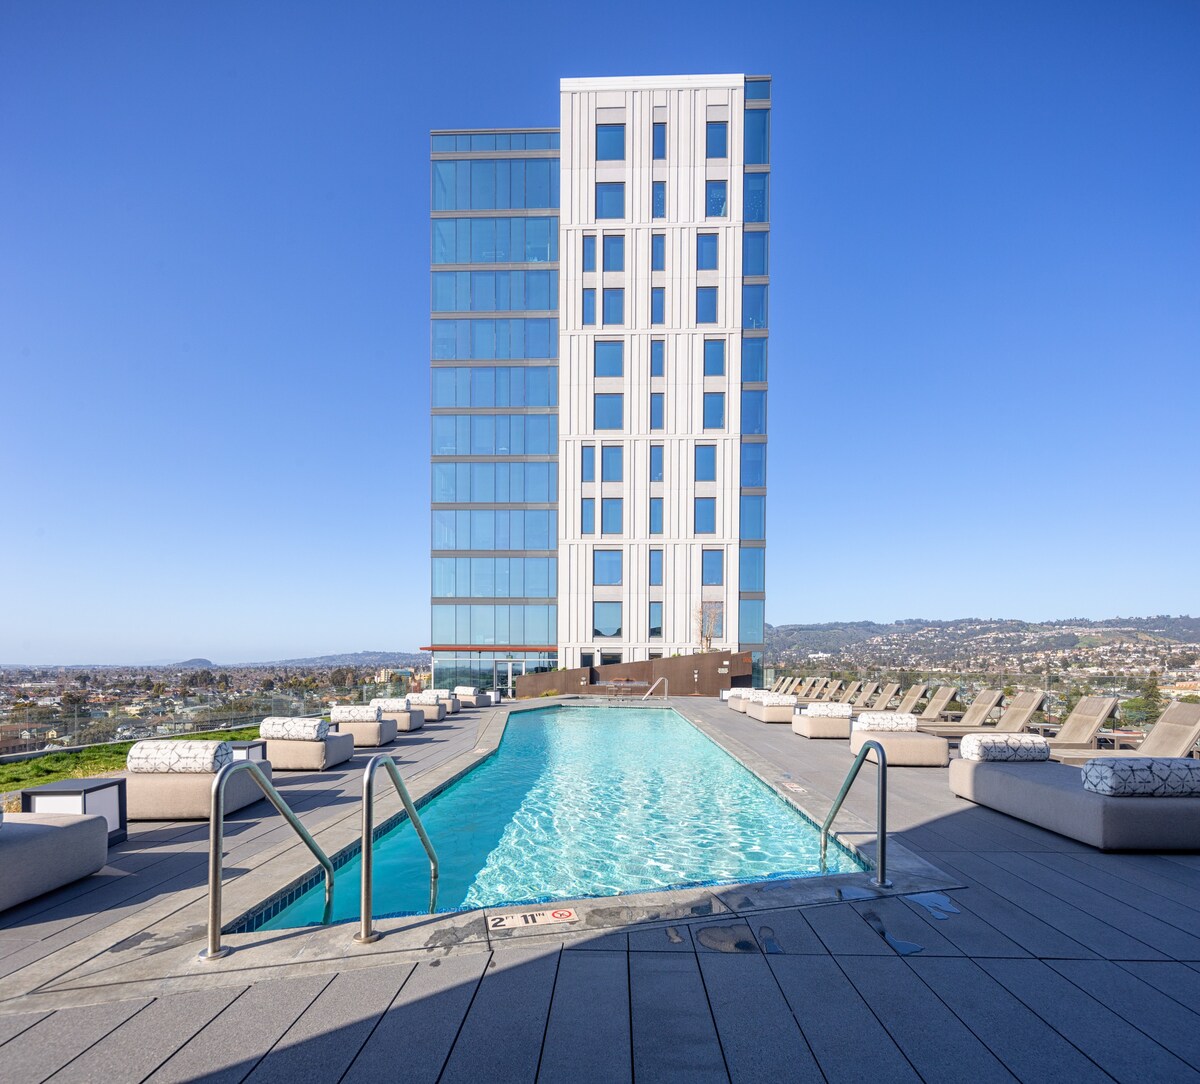 旧金山附近的豪华高层公寓|高速无线网络、健身房、游泳池